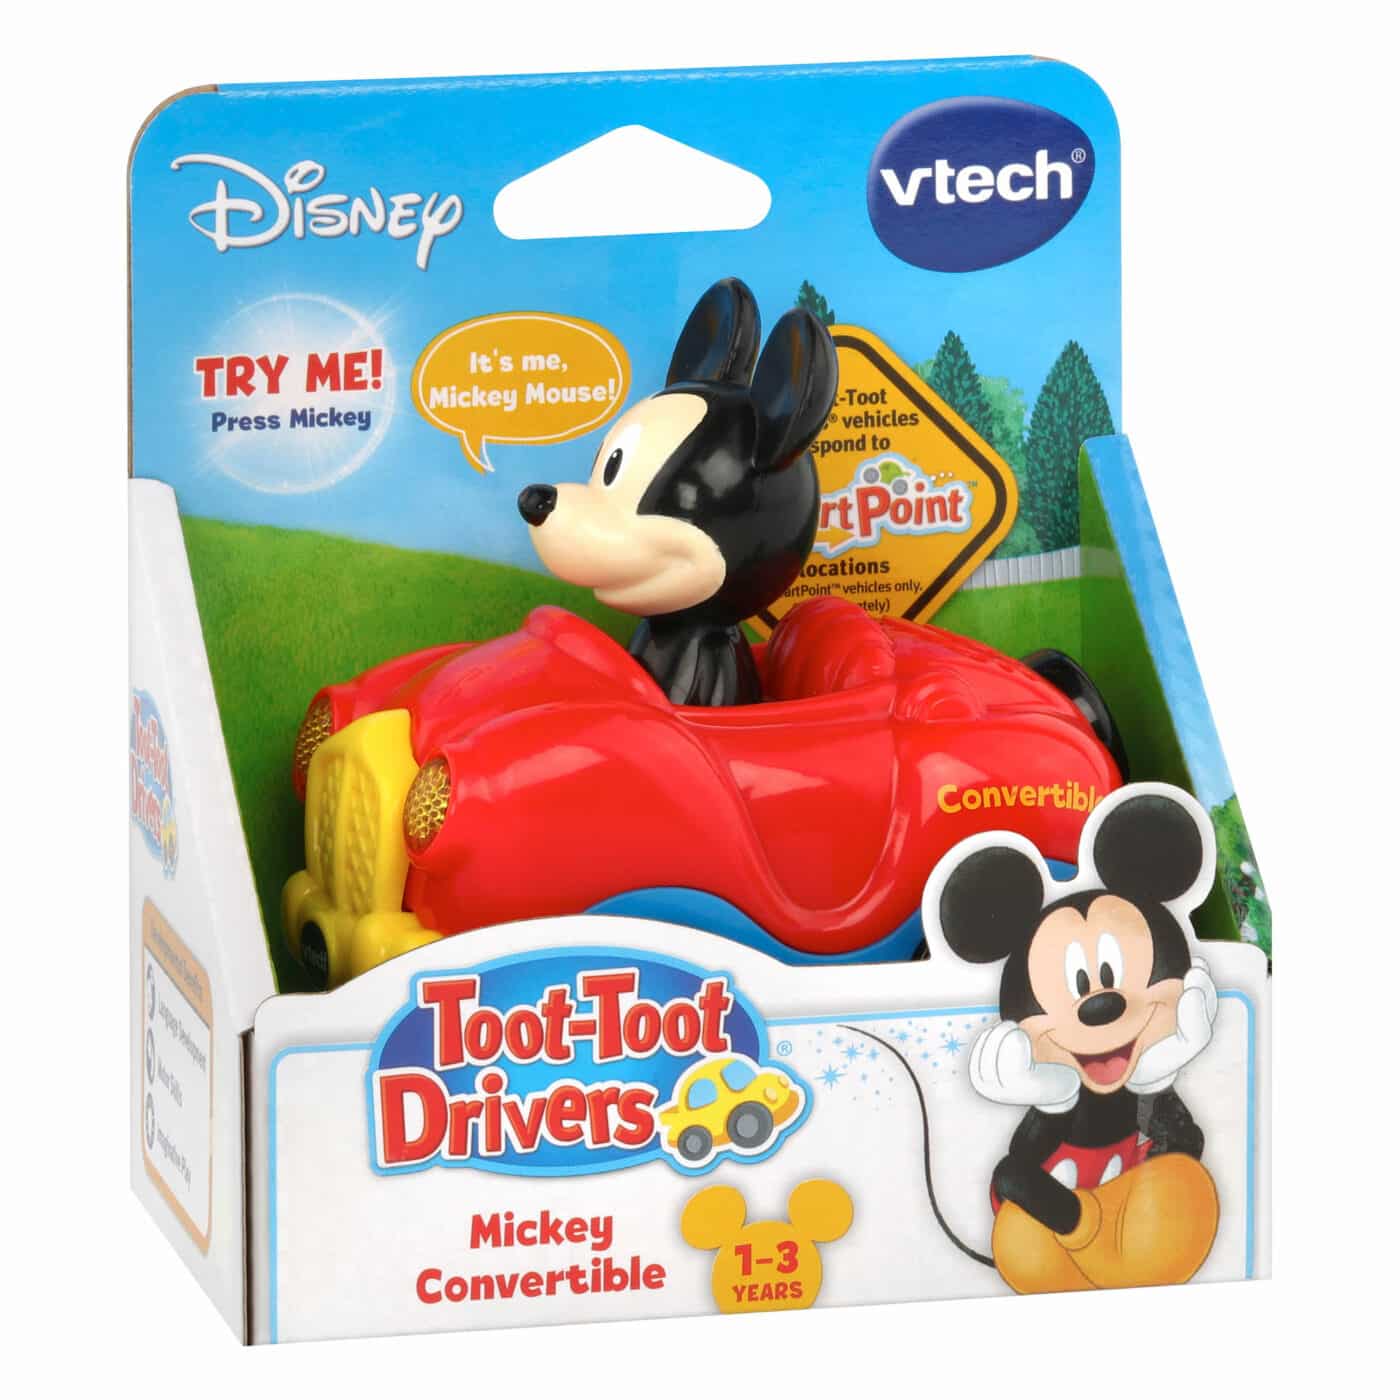 Vtech Toot Toot Drivers Disney - Vehicles Assortment